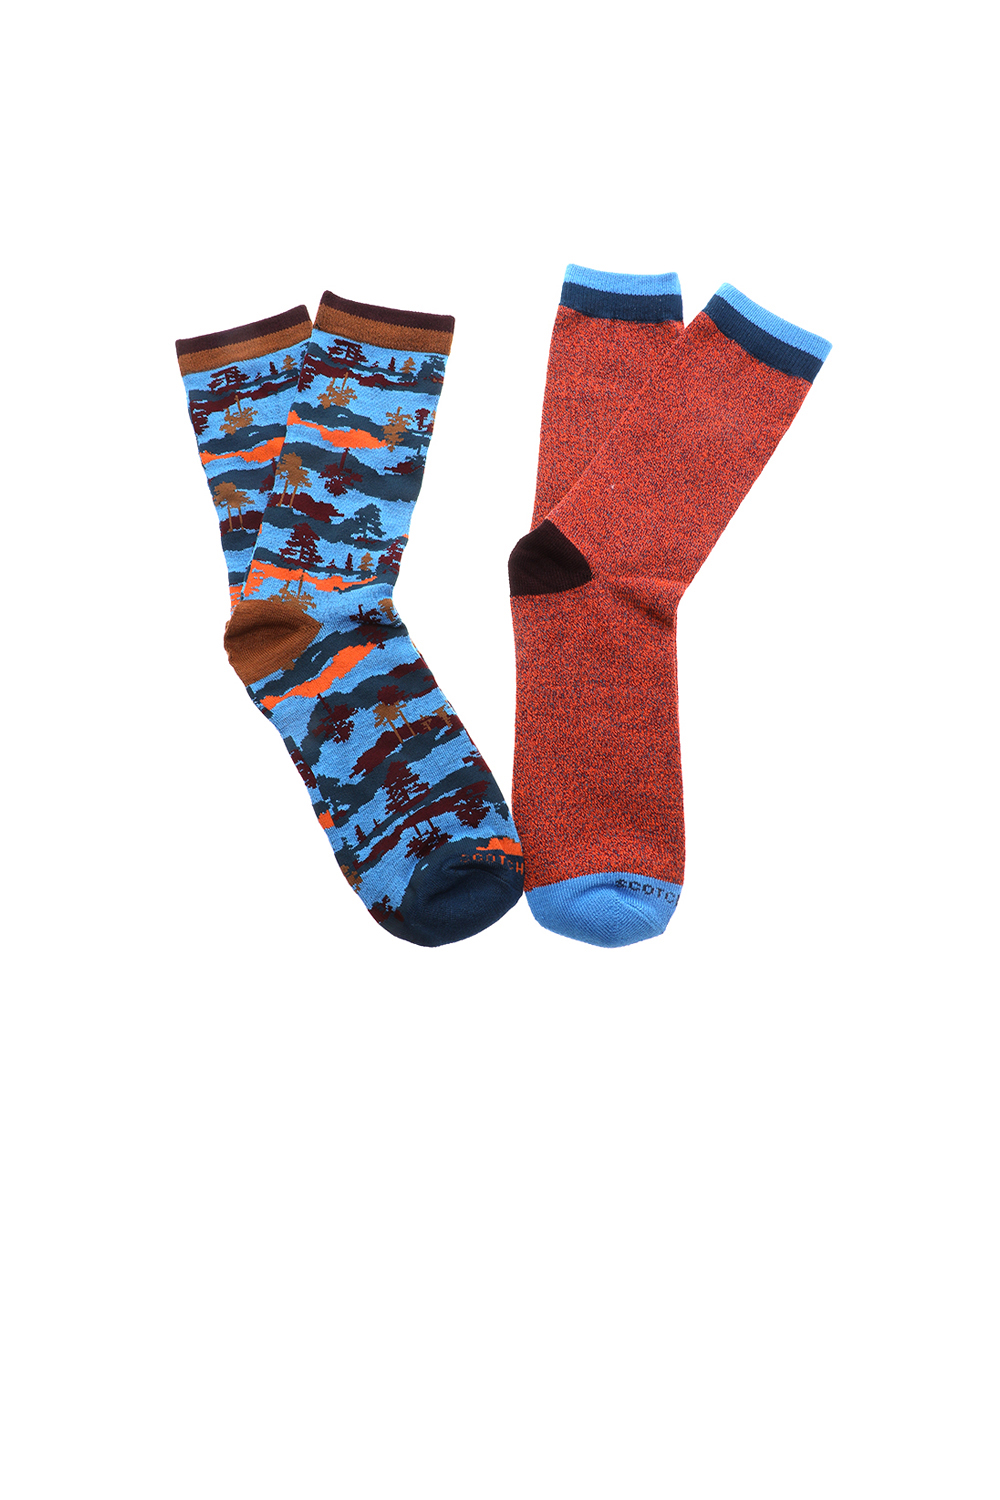 Ανδρικά/Αξεσουάρ/Κάλτσες SCOTCH & SODA - Ανδρικές κάλτσες σετ των 2 SCOTCH & SODA κόκκινες μπλε